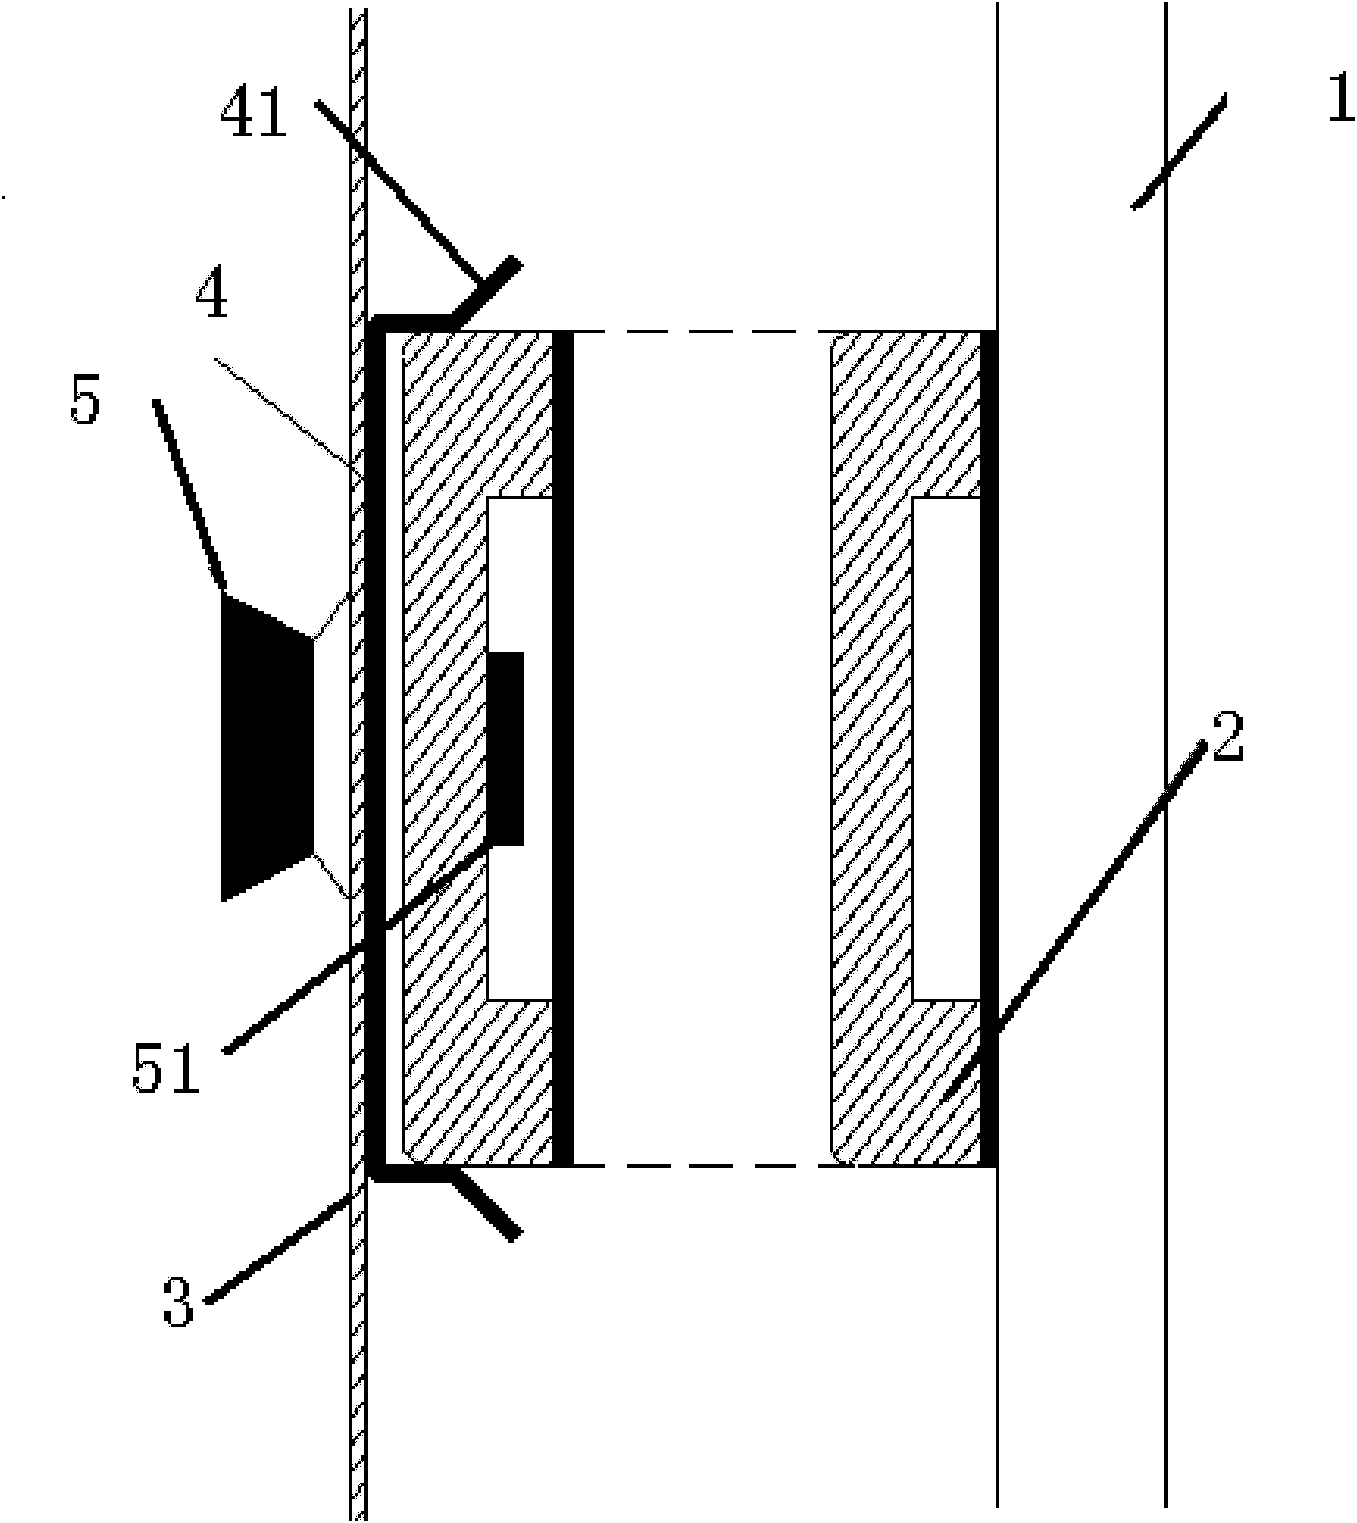 Switch cabinet door plank lifting mechanism